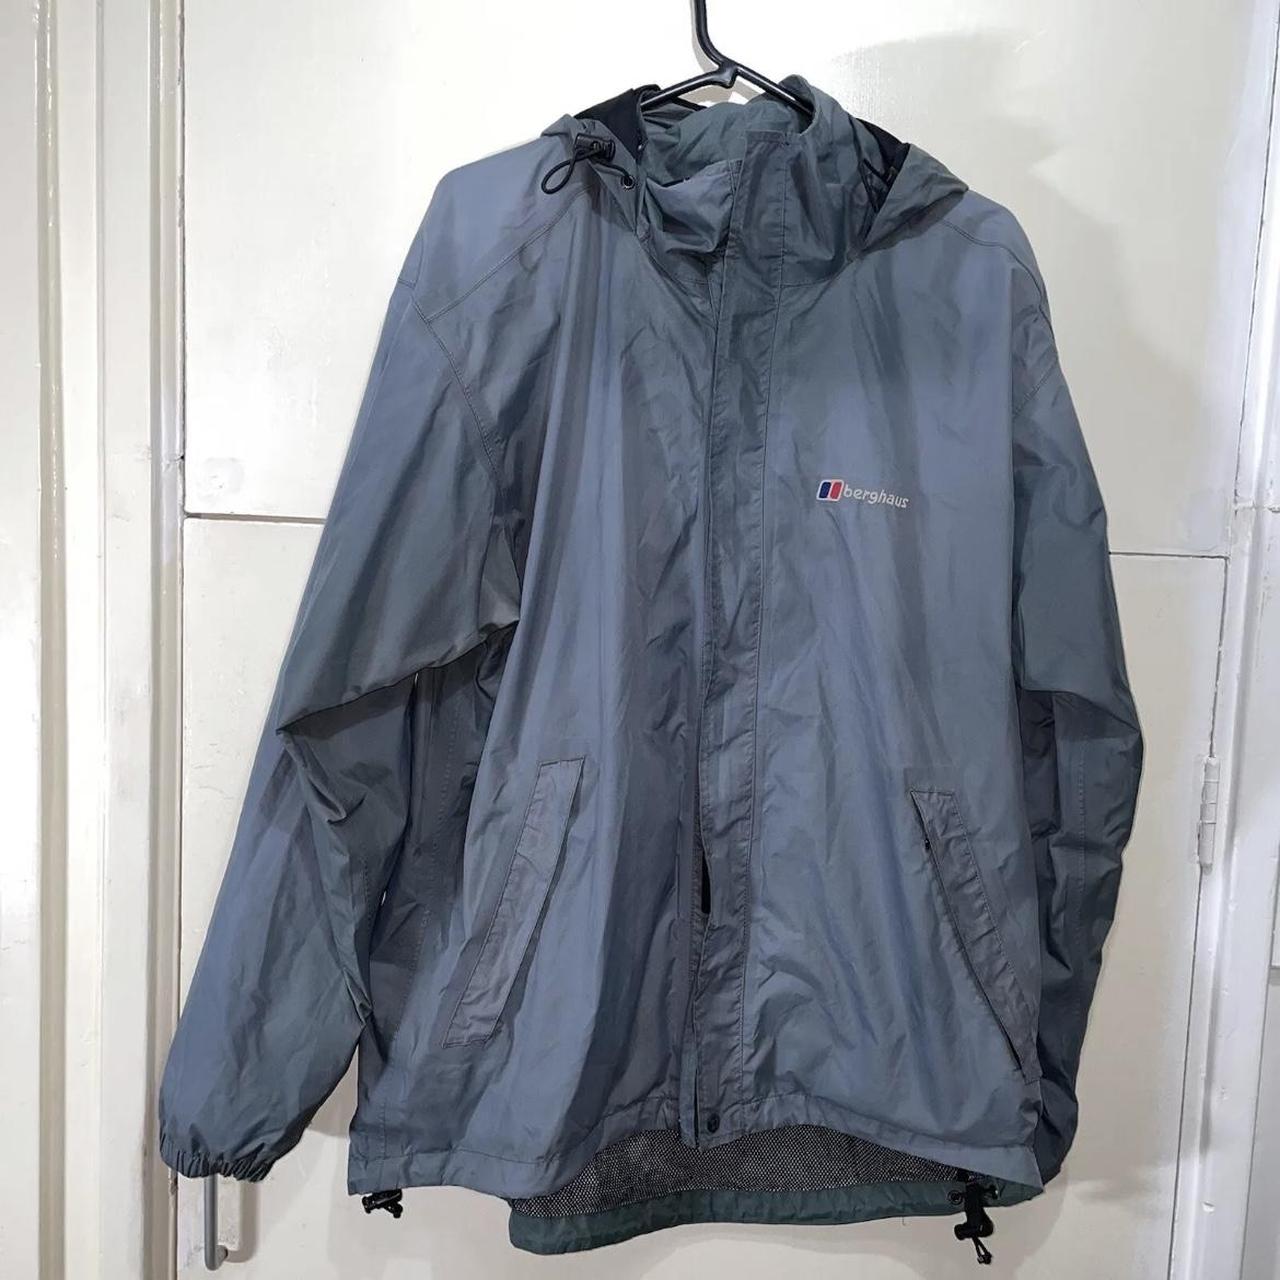 Berghaus Grey Aquafoil Hooded Waterproof Jacket;... - Depop